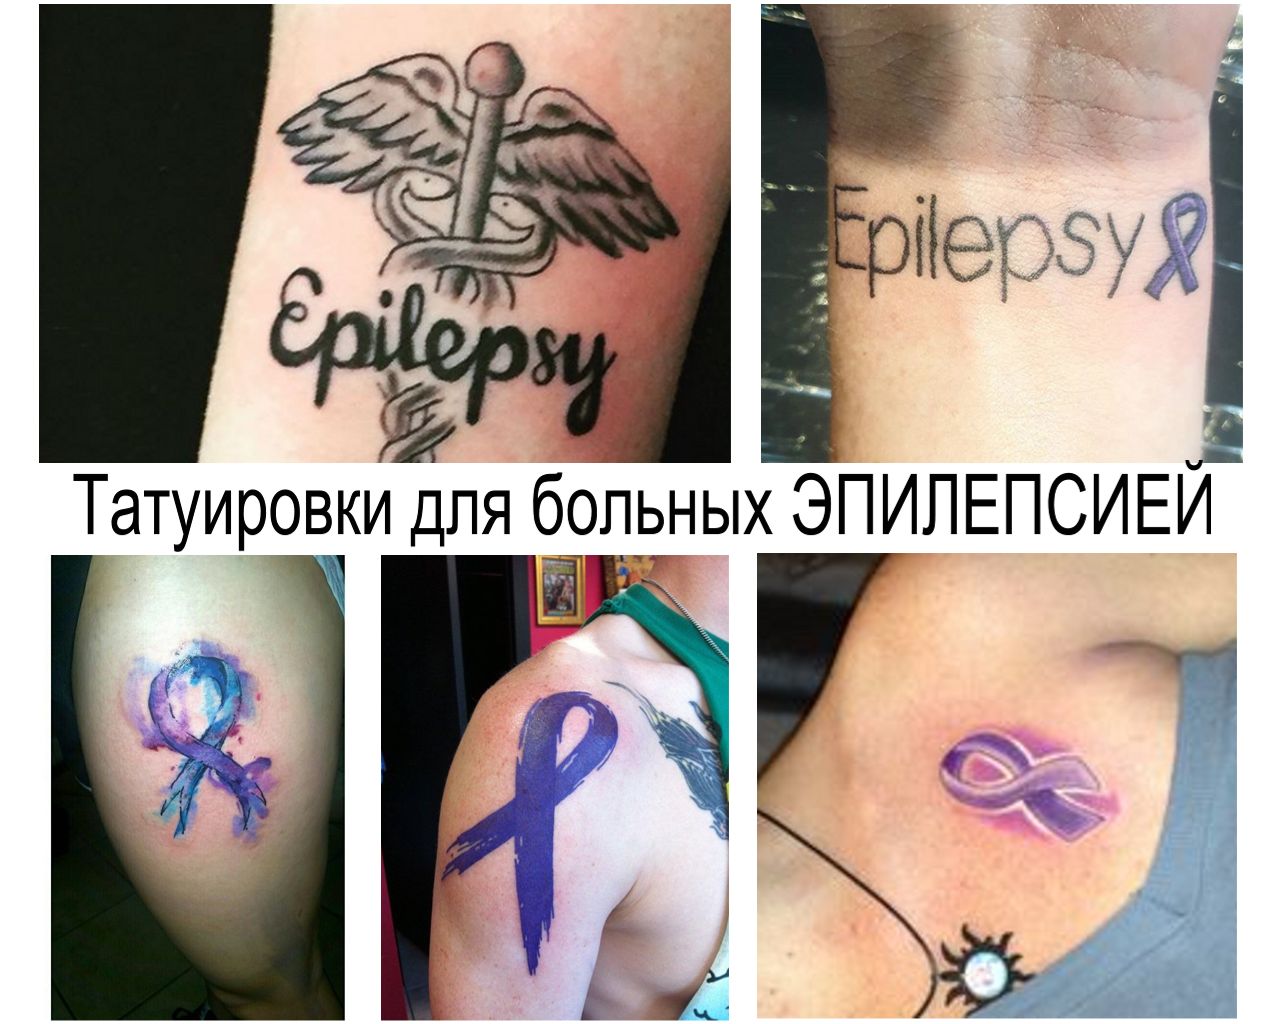 Татуировки ко Дню больных эпилепсией (фиолетовый день) – 26 марта